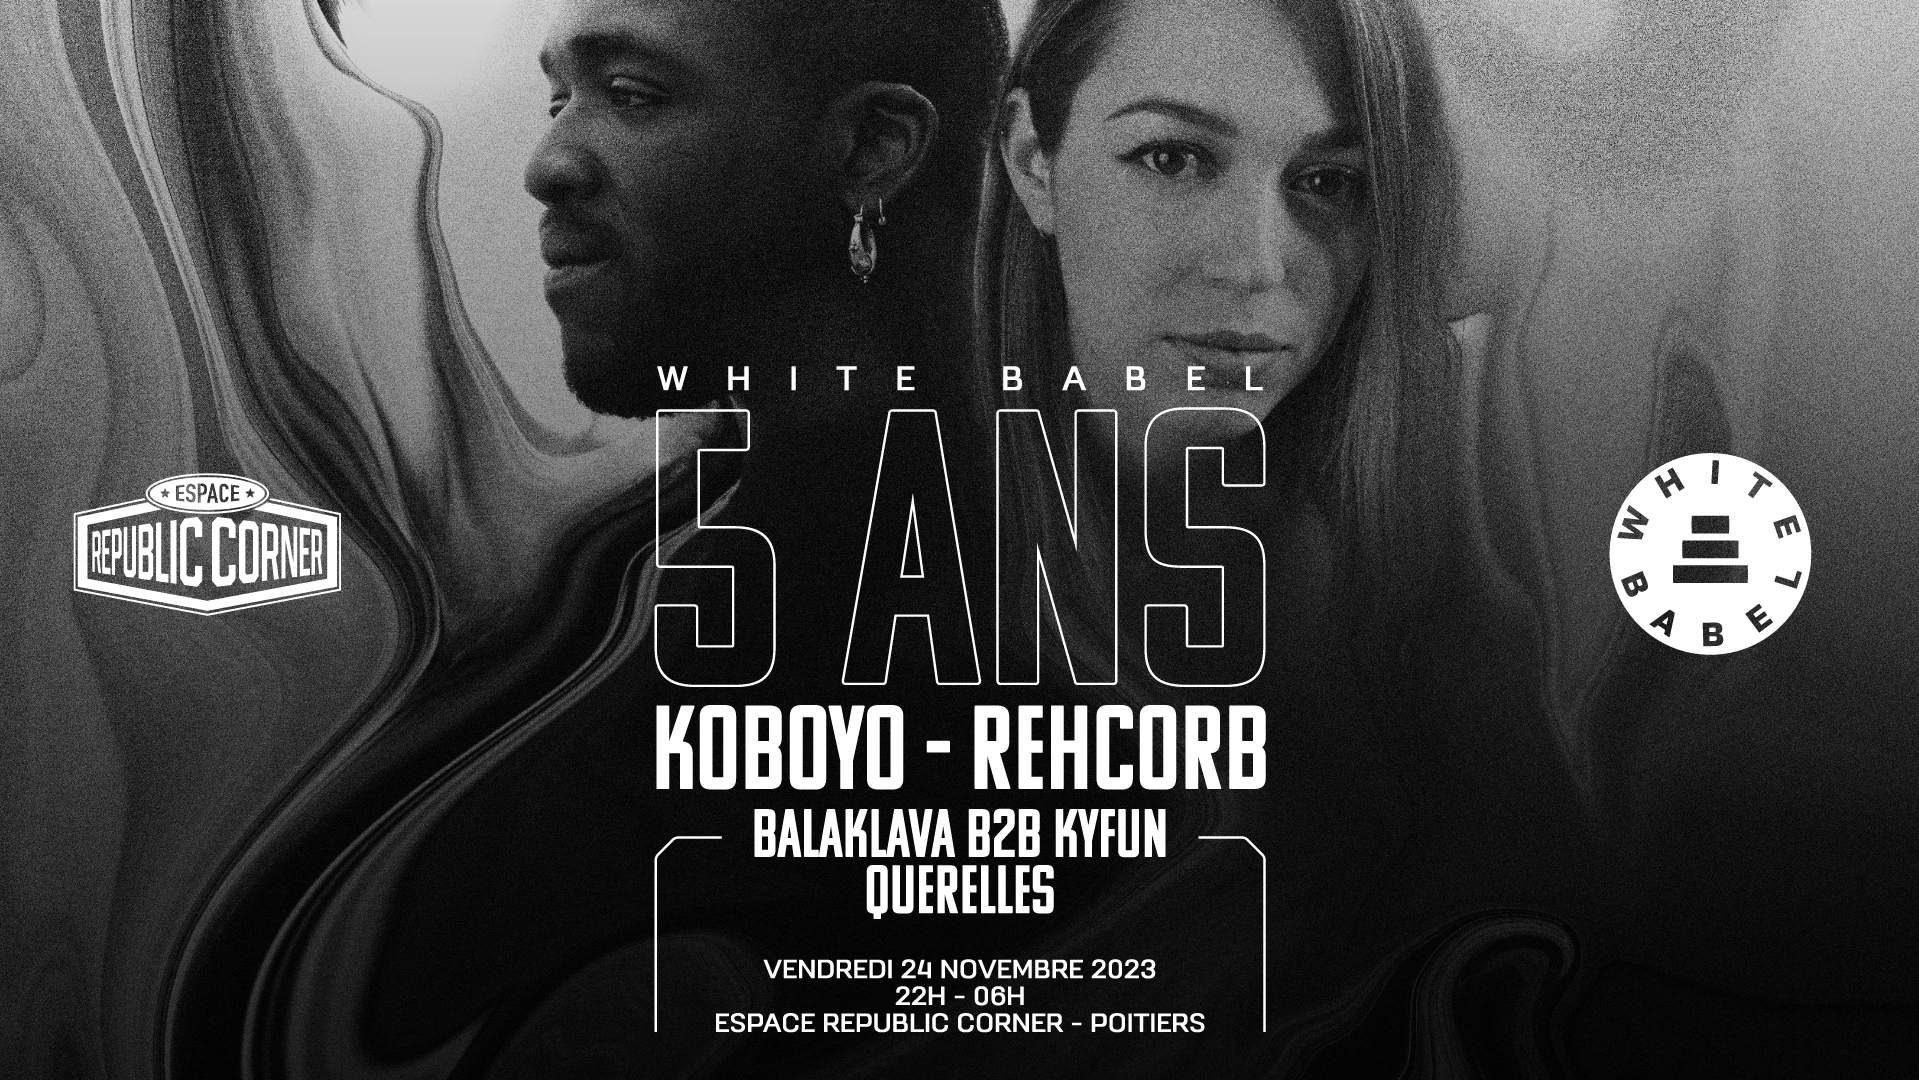 White Babel fête ses 5 ans: Koboyo + Rehcorb + White Babel DJs - フライヤー表